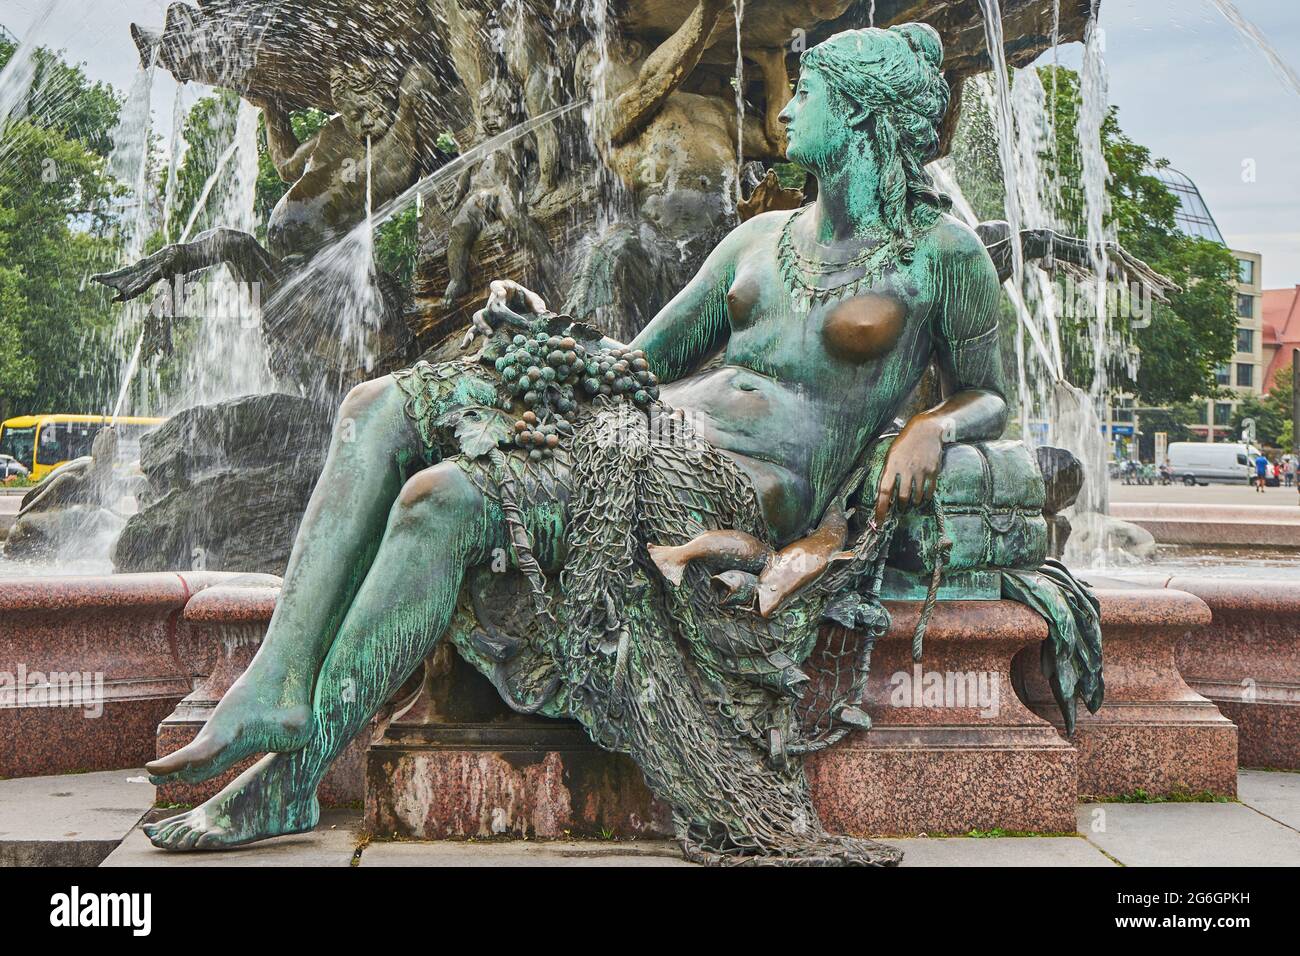 Frauenfigur, verkörpert den Fluss Rhein, Neptunbrunnen, Schlossbrunnen oder Begasbrunnen, von Reinhold Begas, Berlin-Mitte, Berlin, Allemagne Banque D'Images